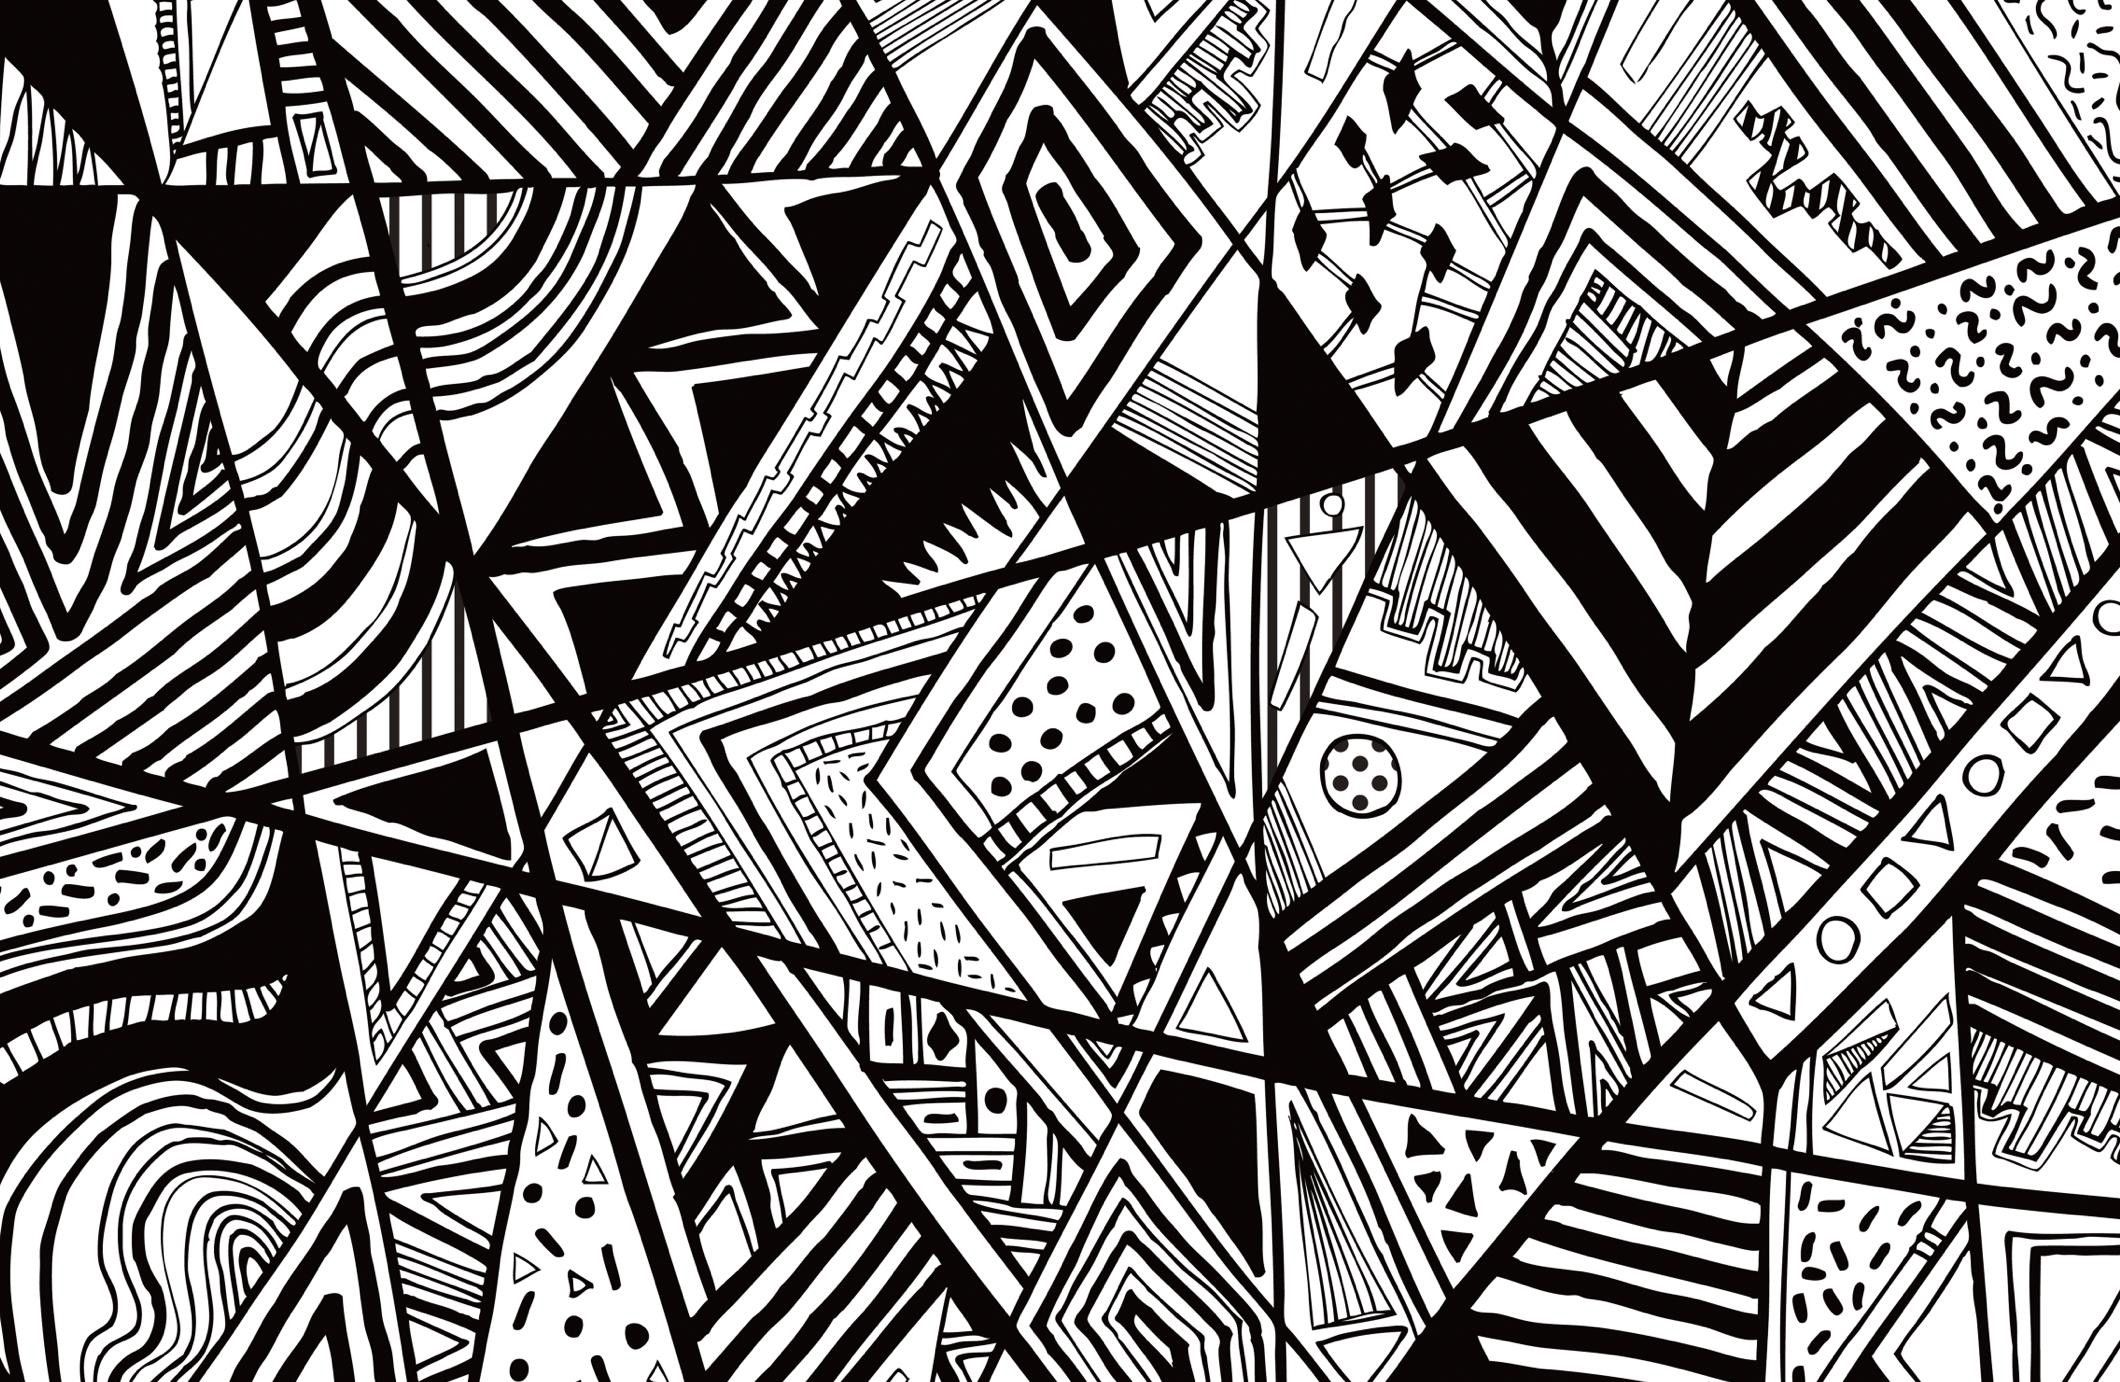 Black and White Abstract Wallpapers - Top Những Hình Ảnh Đẹp